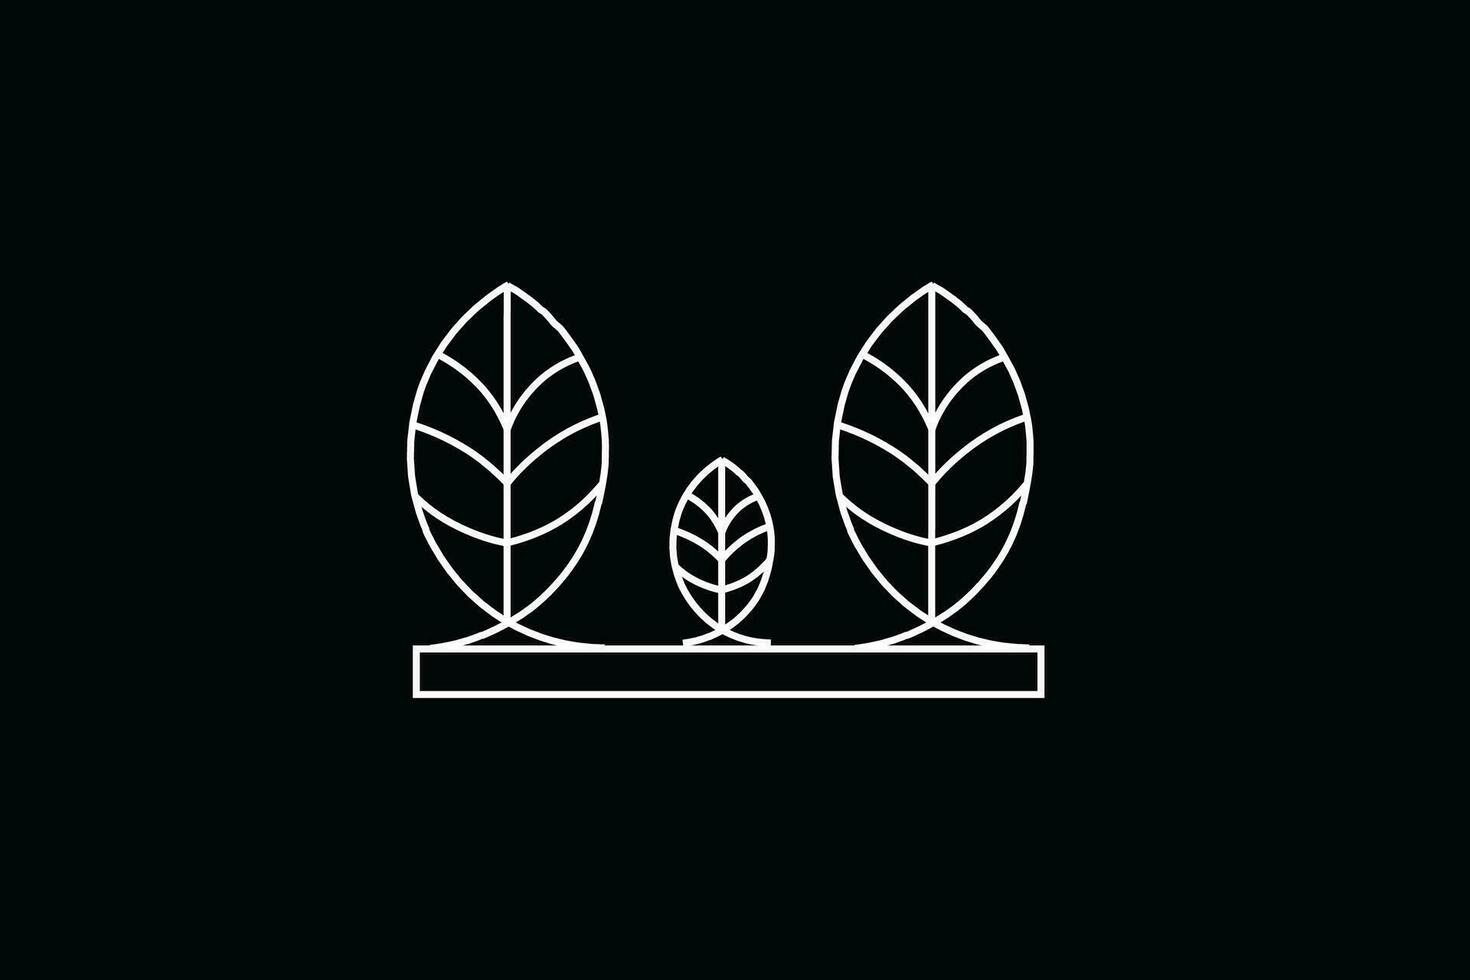 silueta de Tres en pie hojas, línea dibujado y adecuado para utilizar como un logo o símbolo vector